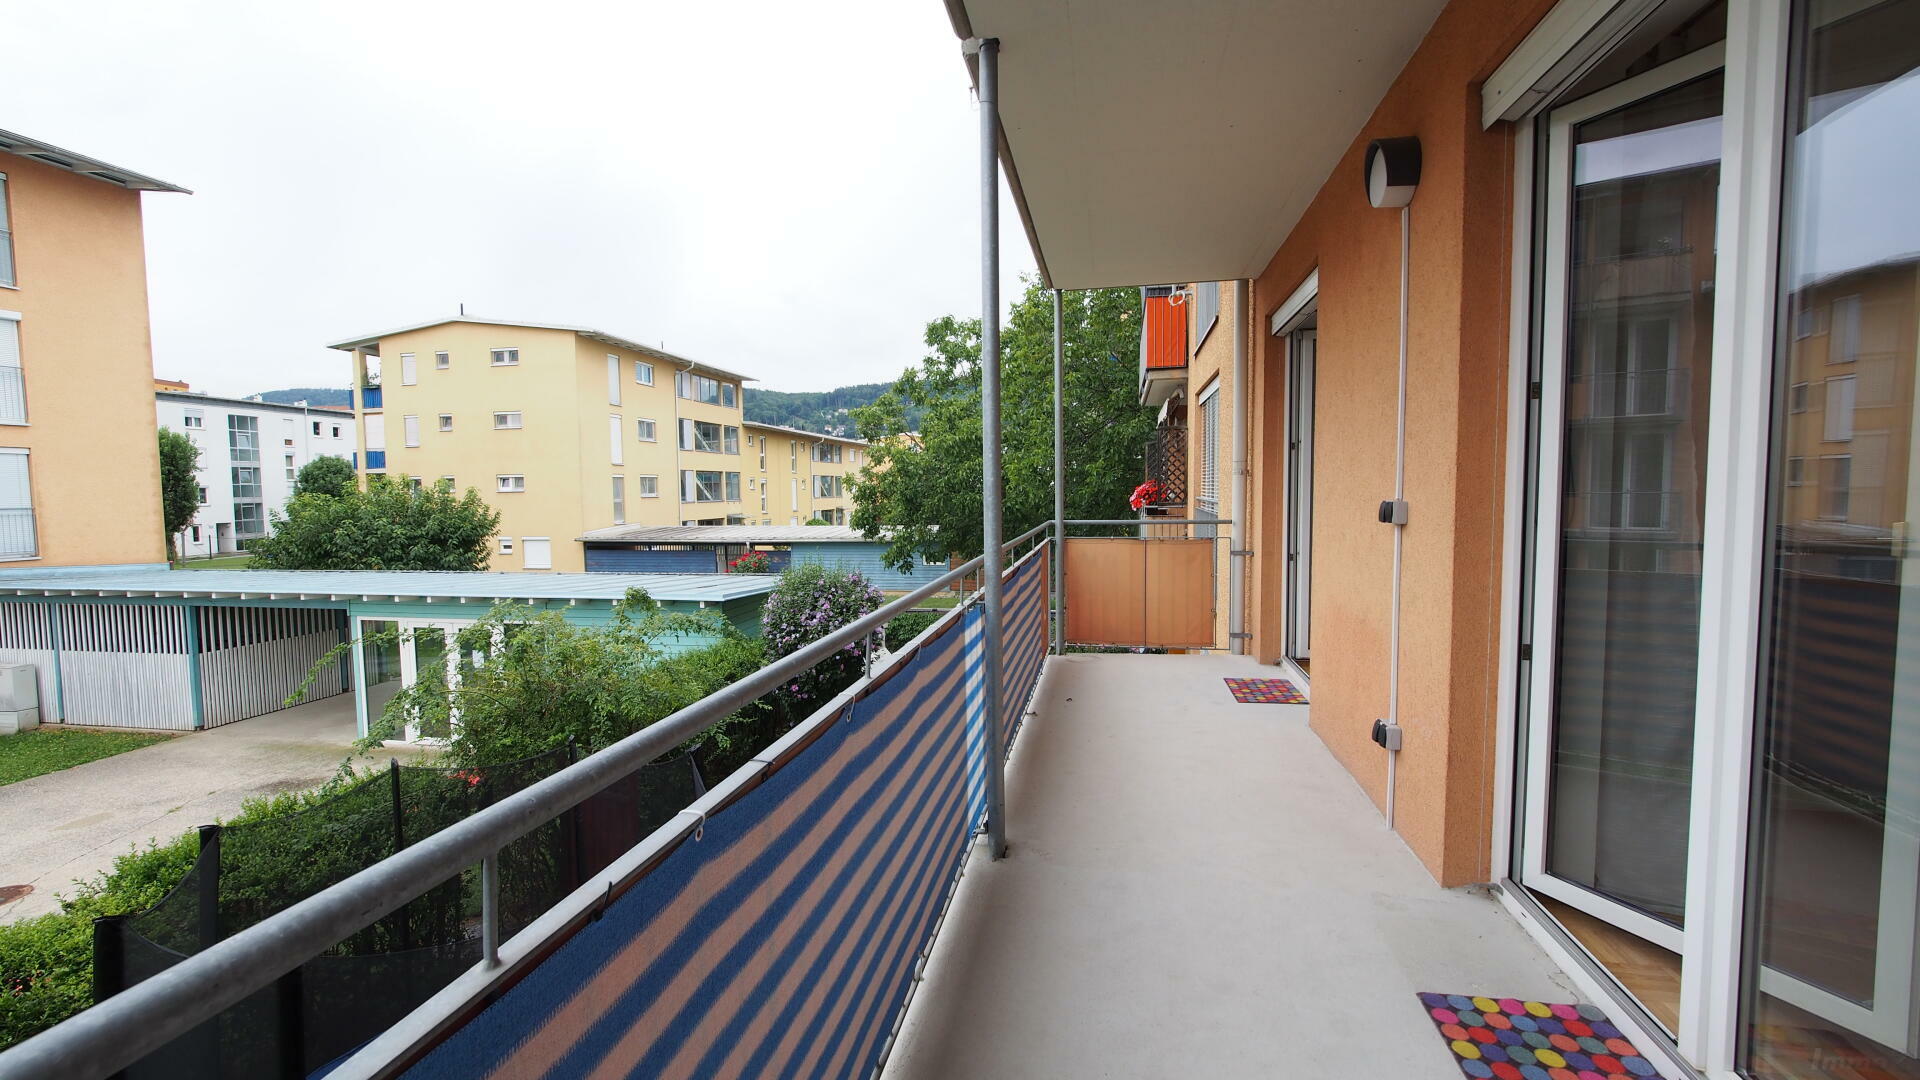 Wohnung zu mieten: Schererstraße 43/4, 8052 Graz,15.Bez.:Wetzelsdorf - Balkon